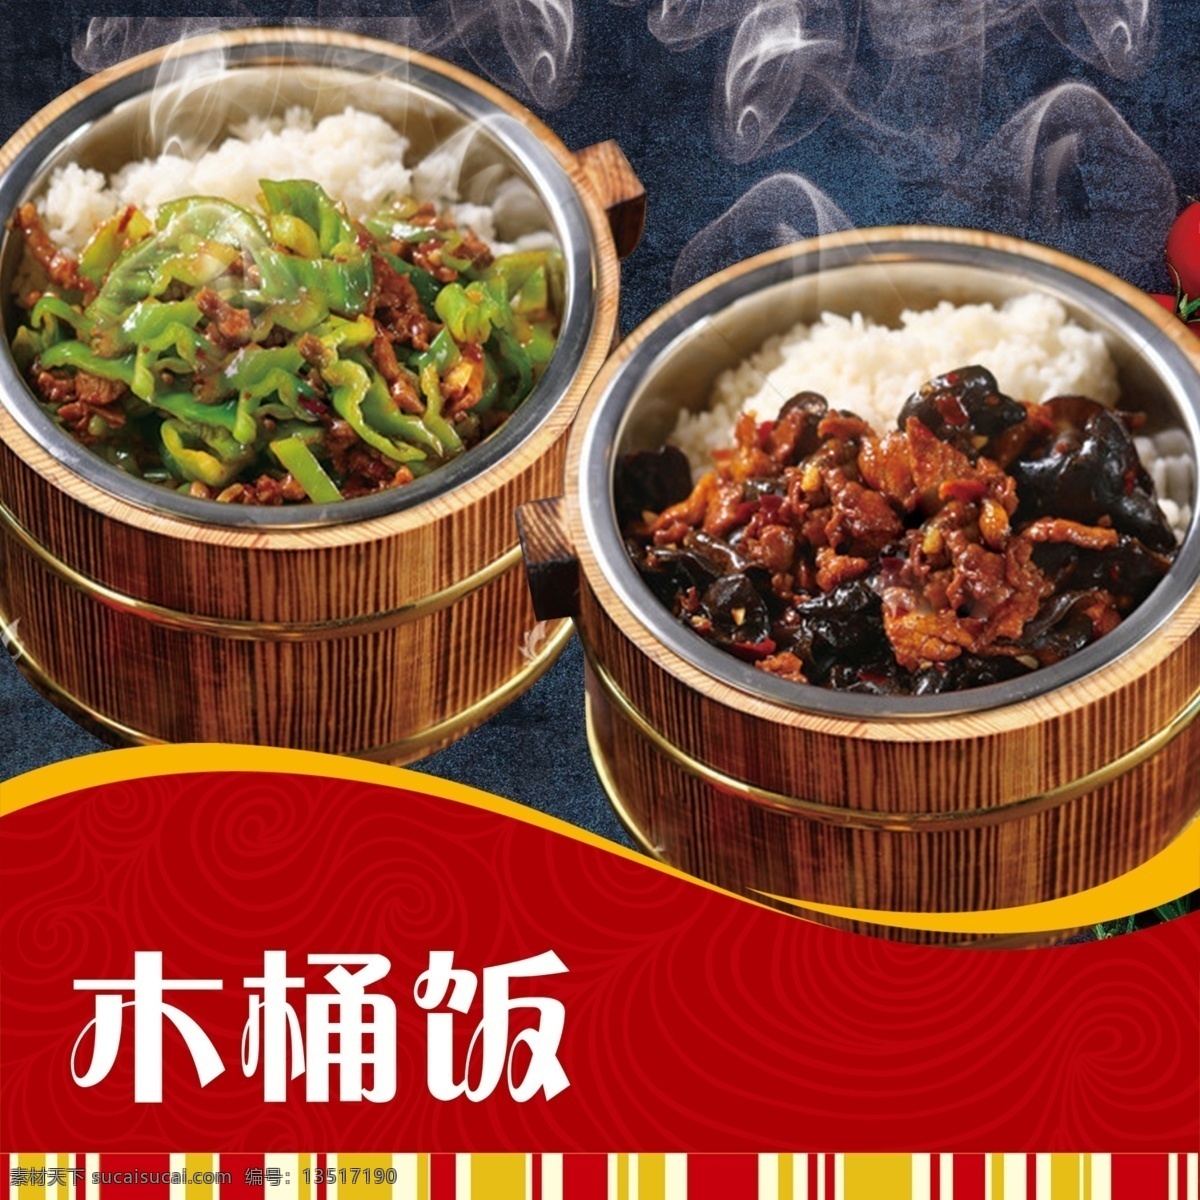 木桶饭图片 木桶饭 菜品样式 木桶米饭 米饭 新疆菜